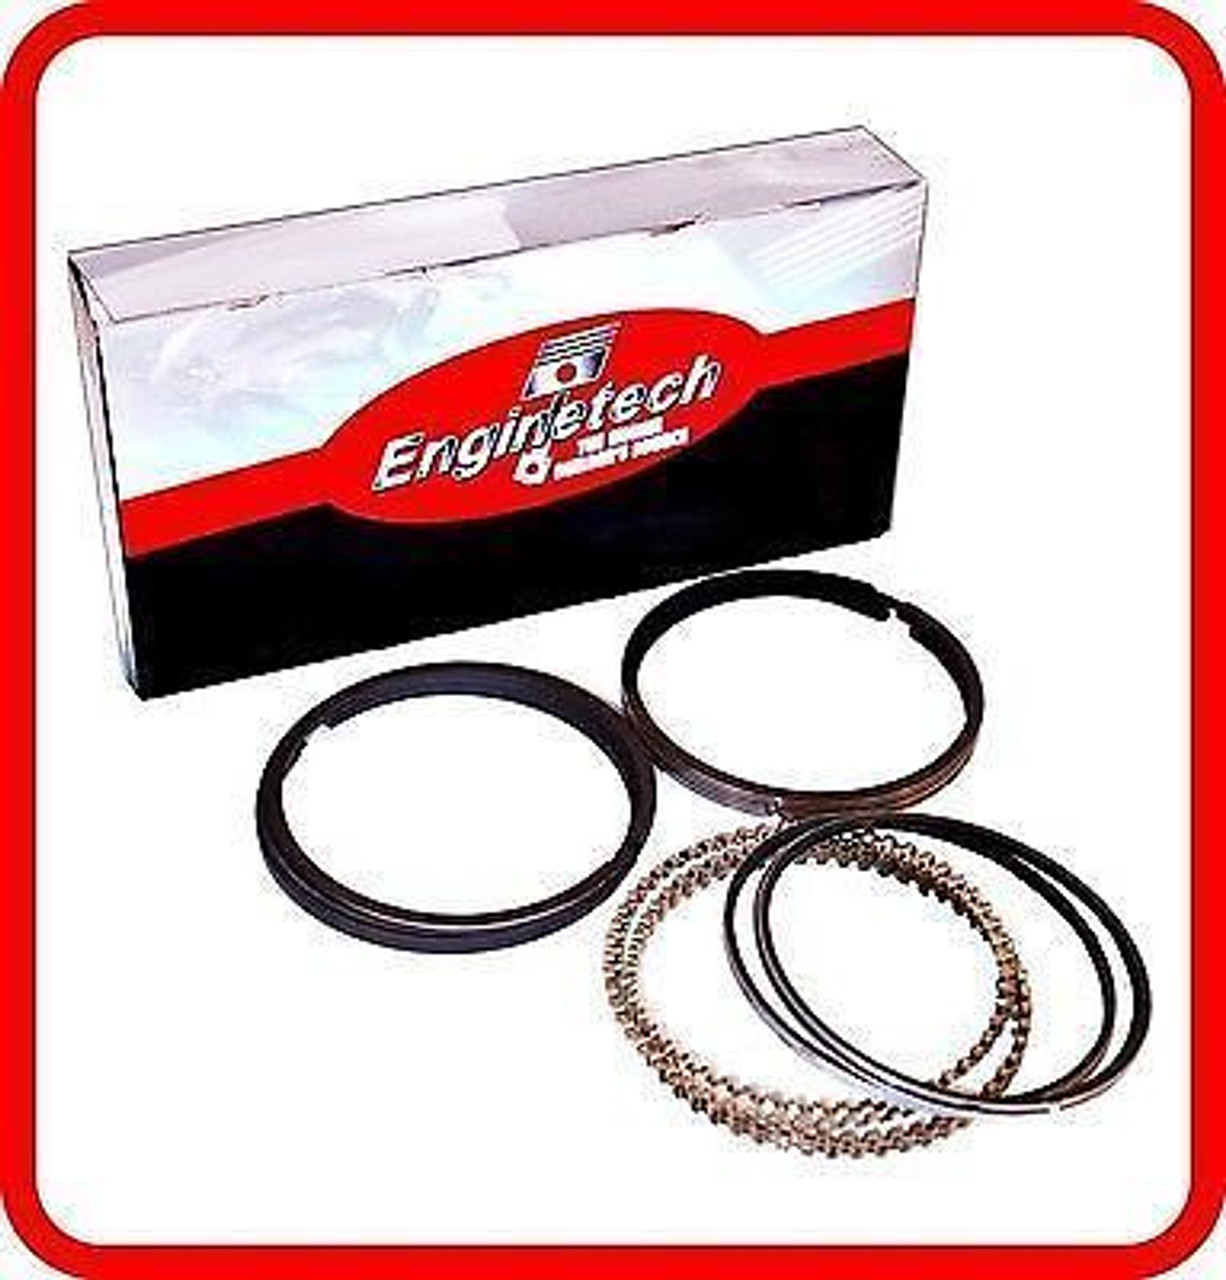 Engine Piston Ring Set - Kit Part - R40058